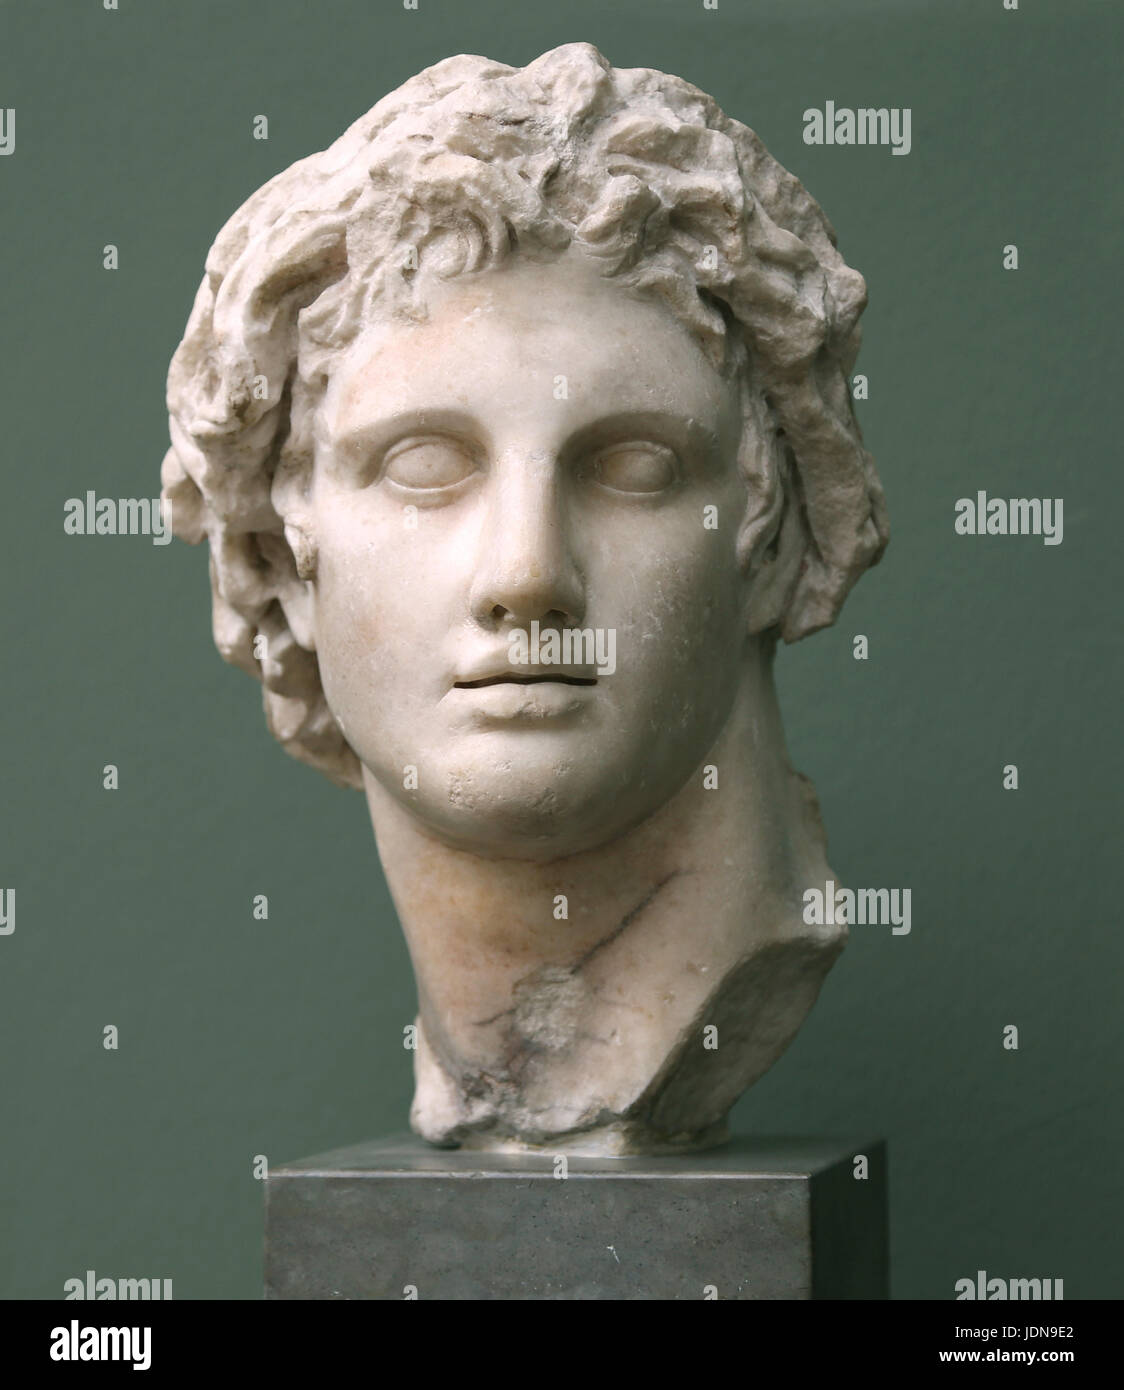 Alexander der große (356-323 v. Chr.). König von Makedonien. Marmorbüste von Alexandria, Kopie eines Porträts der Lisipo Skulptur ca. 330 v. Chr.. Stockfoto